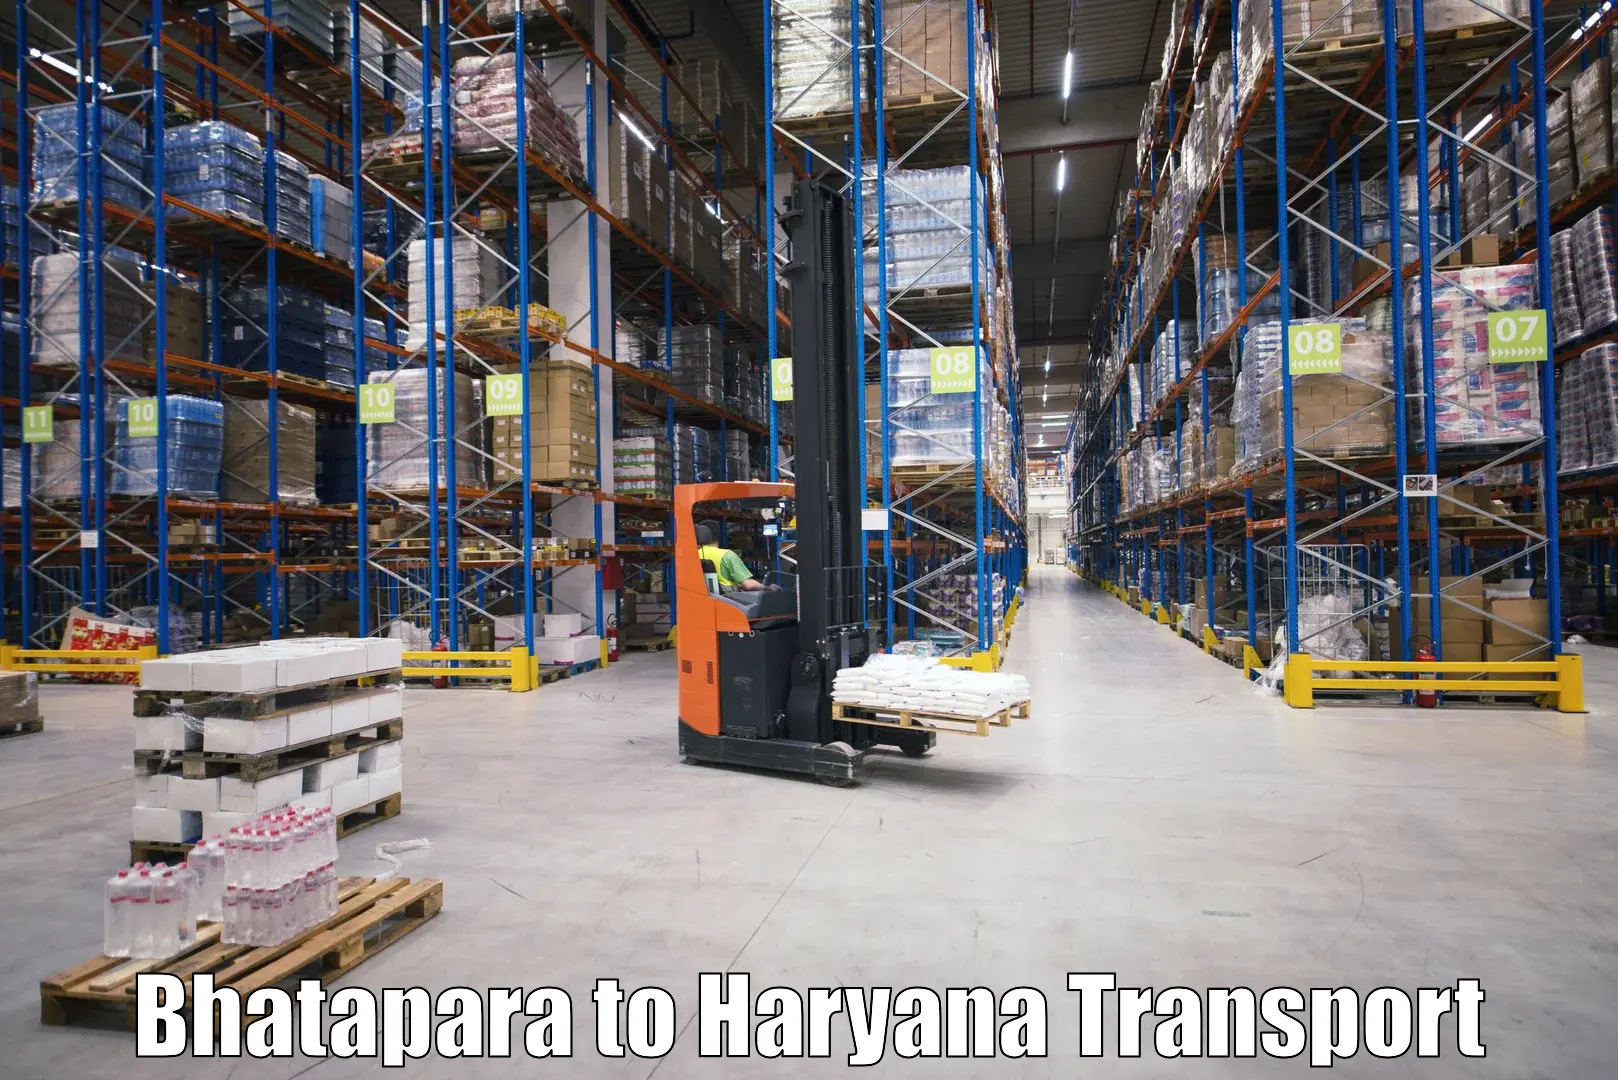 Commercial transport service Bhatapara to Haryana